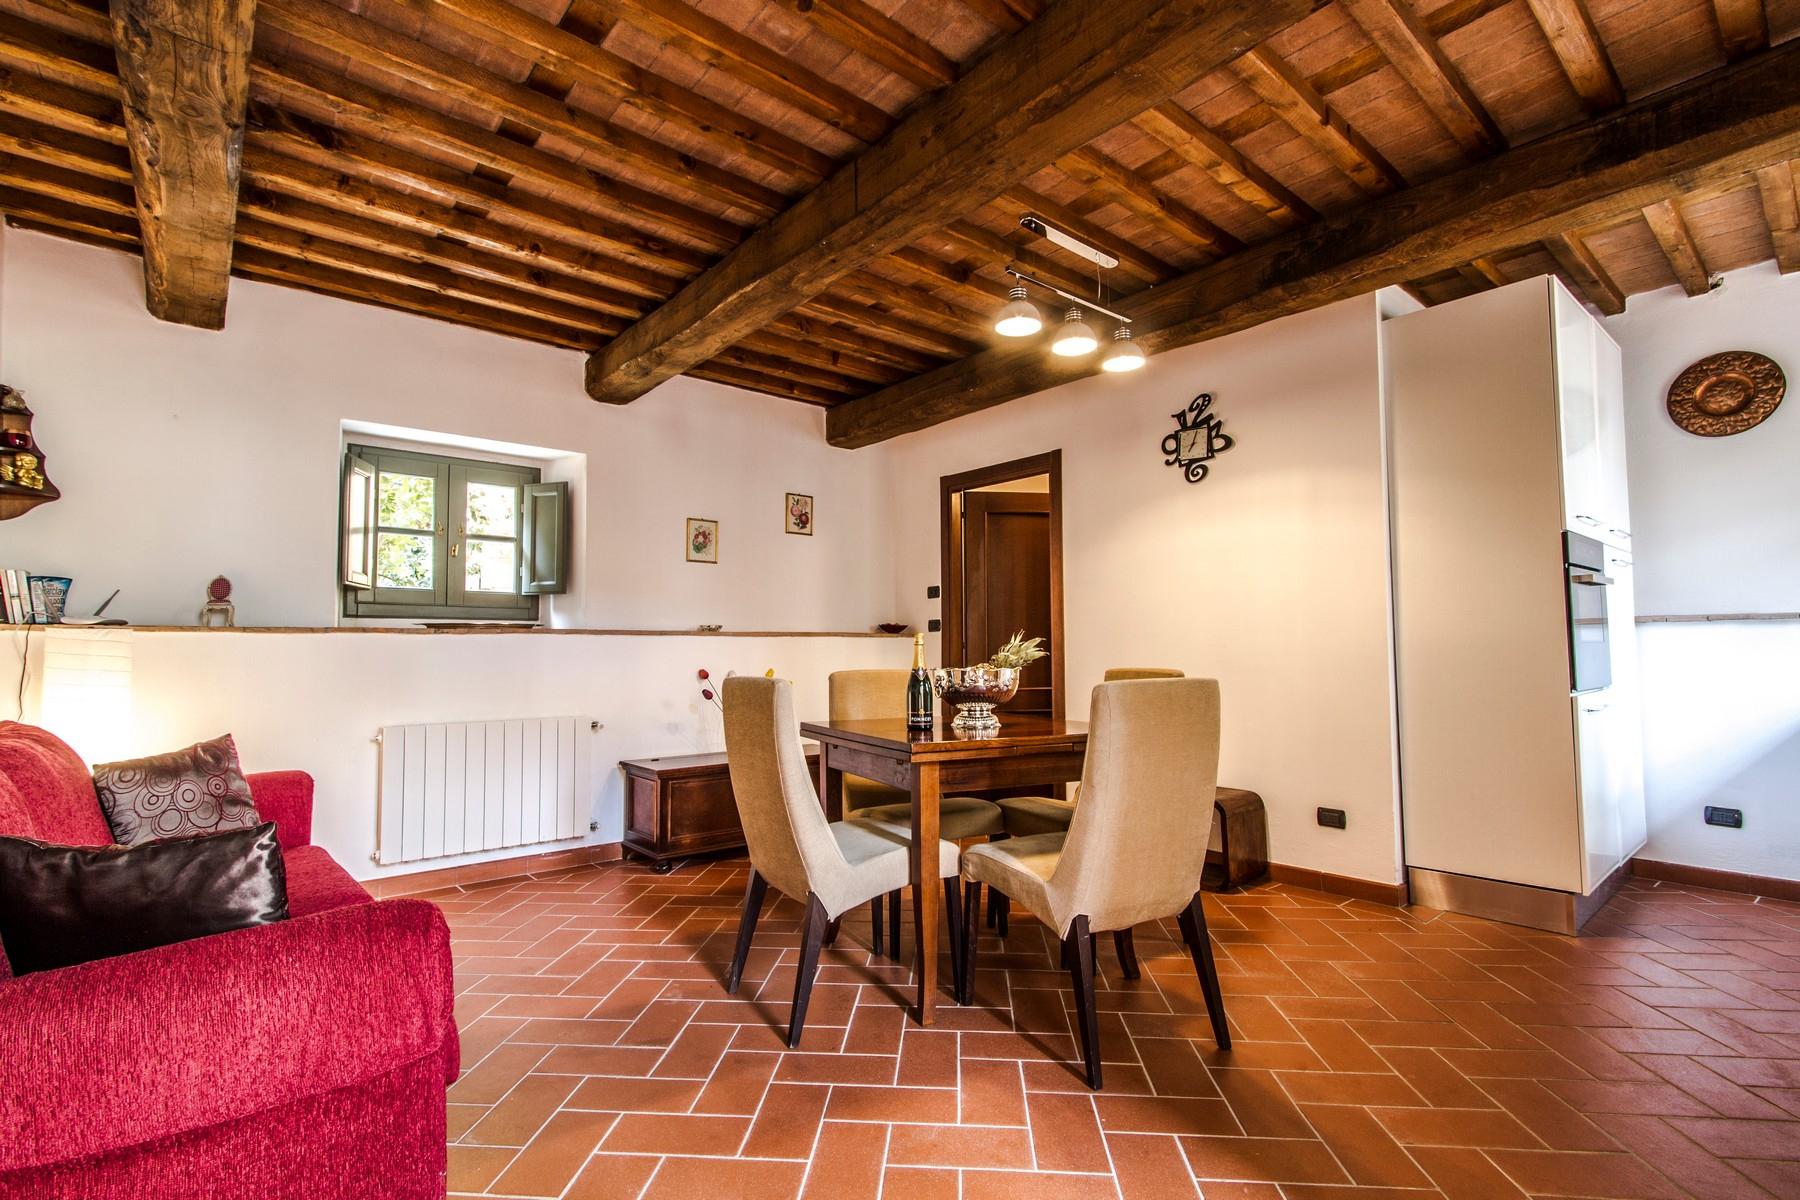 Appartamento di pregio in resort esclusivo con villa storica sulle colline di Lucca - 2